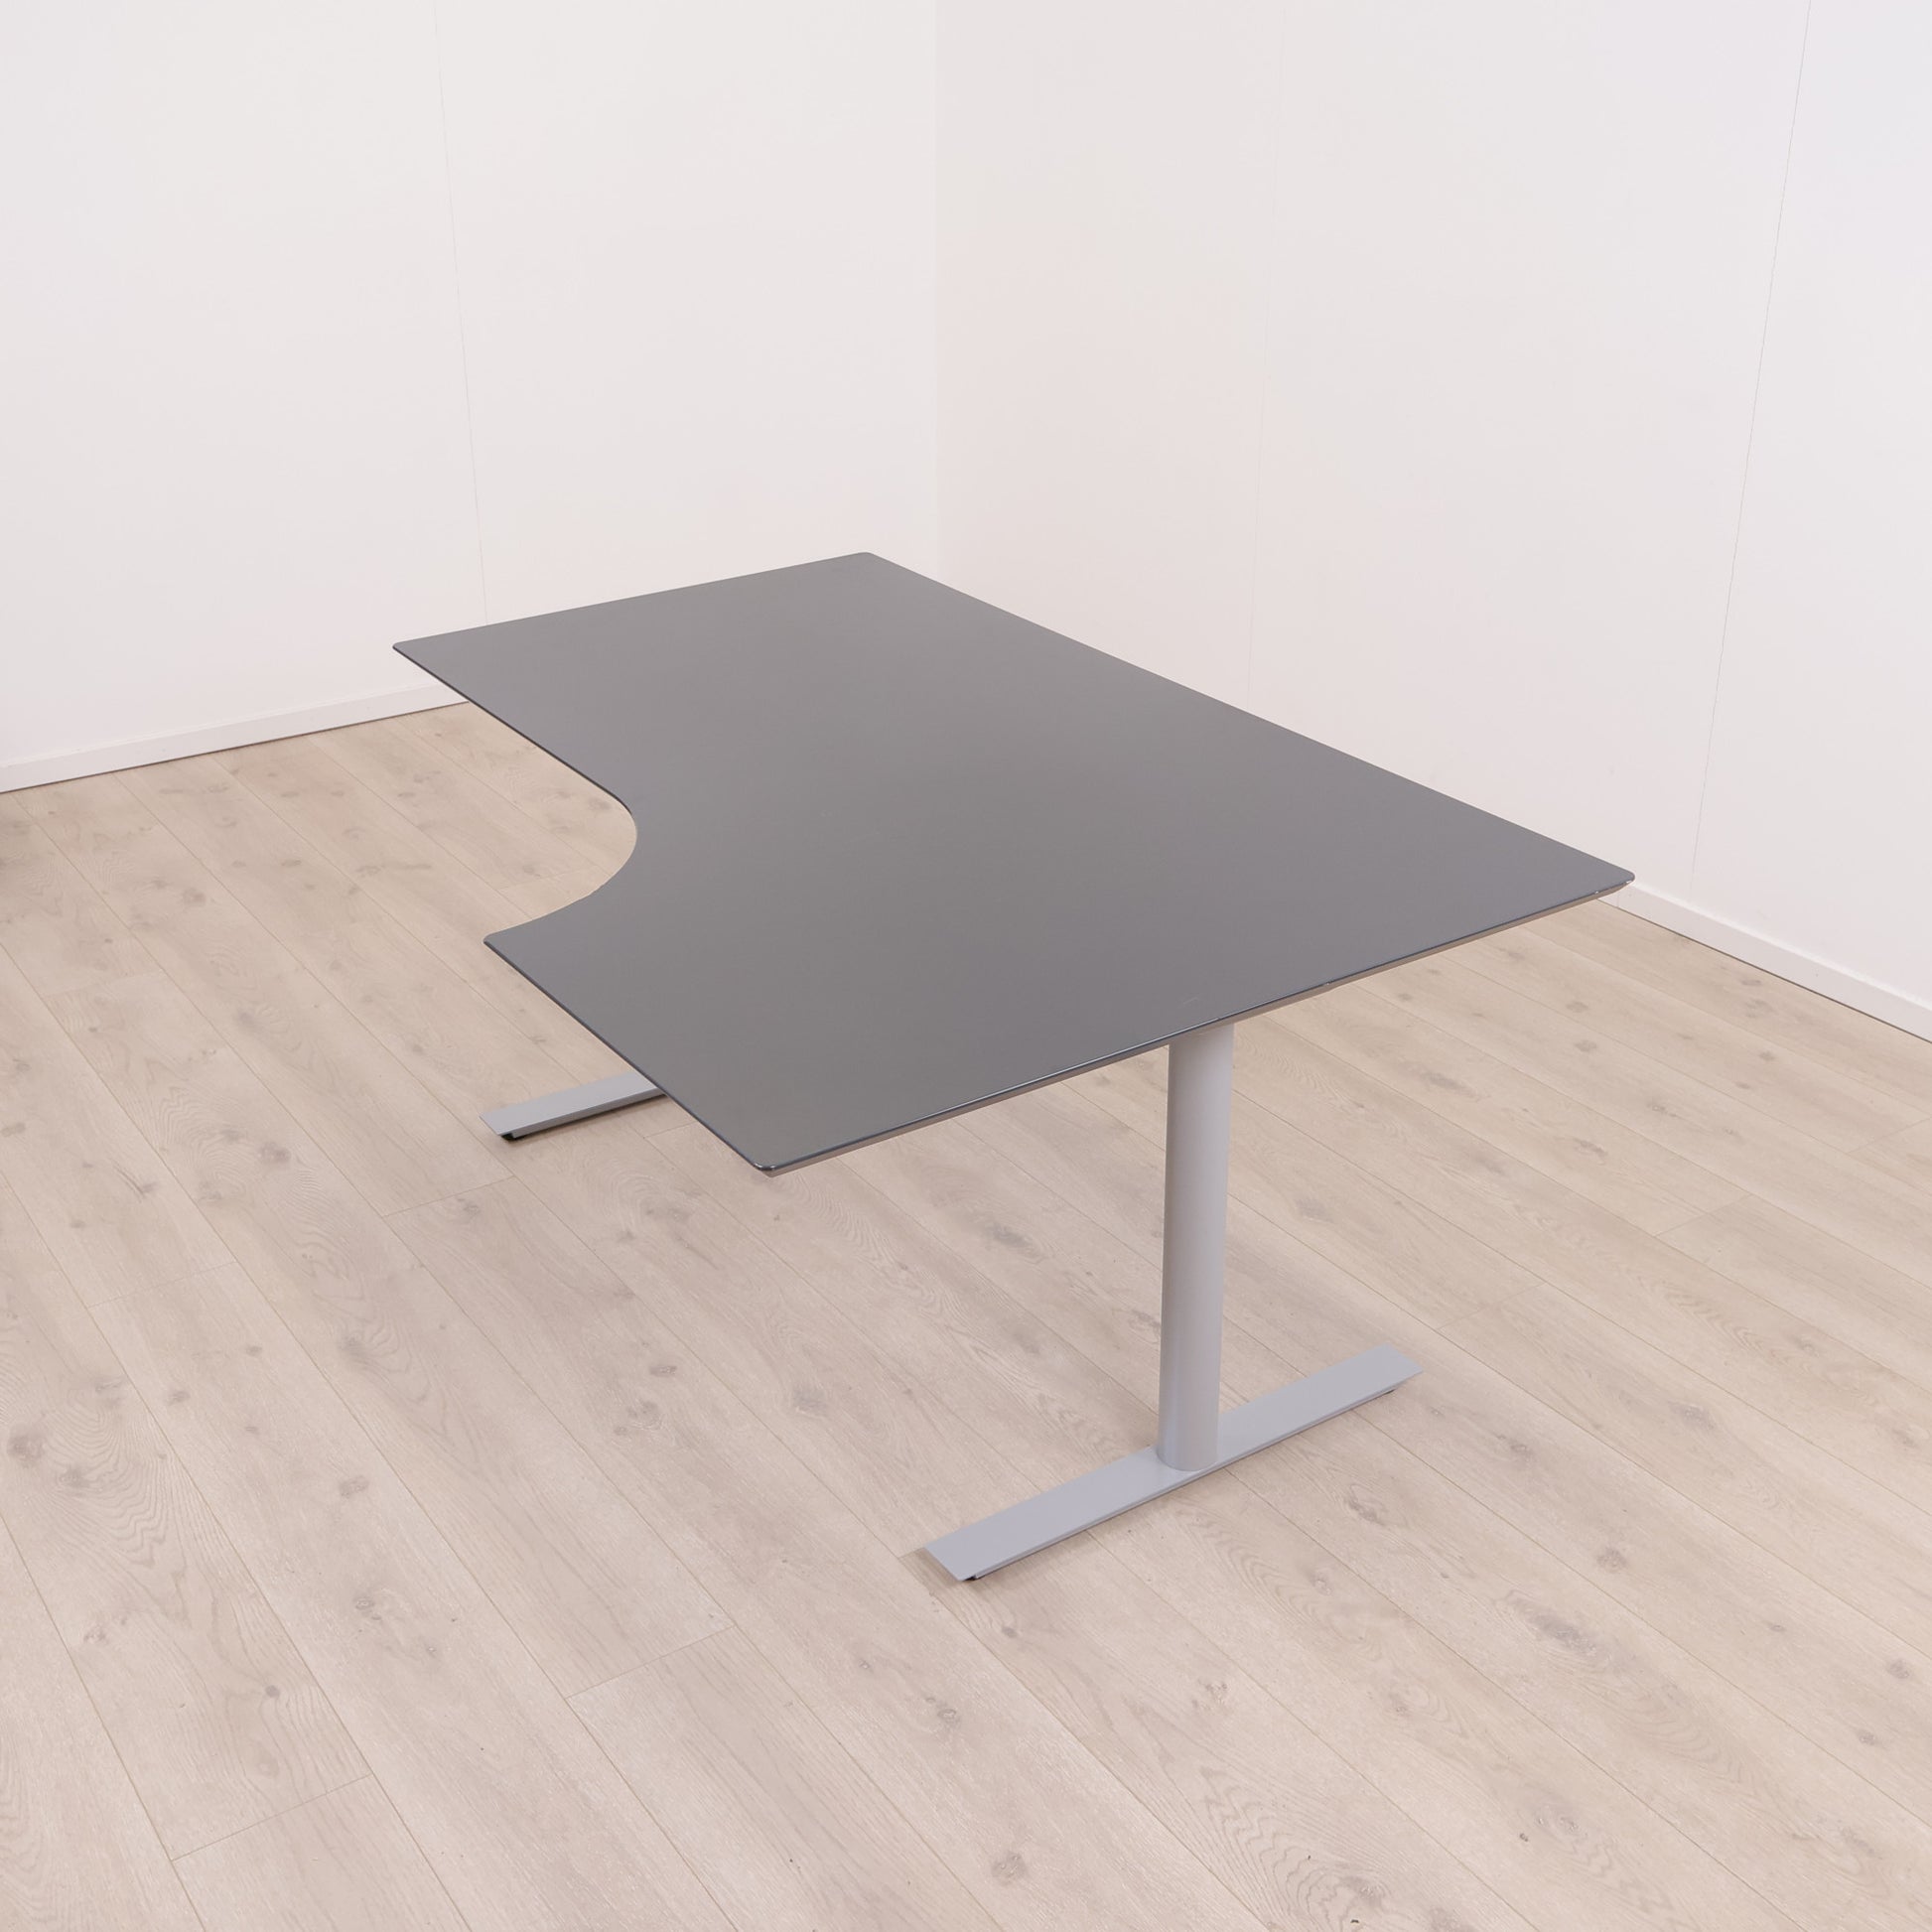 Sort/grå skrivebord med høyresving